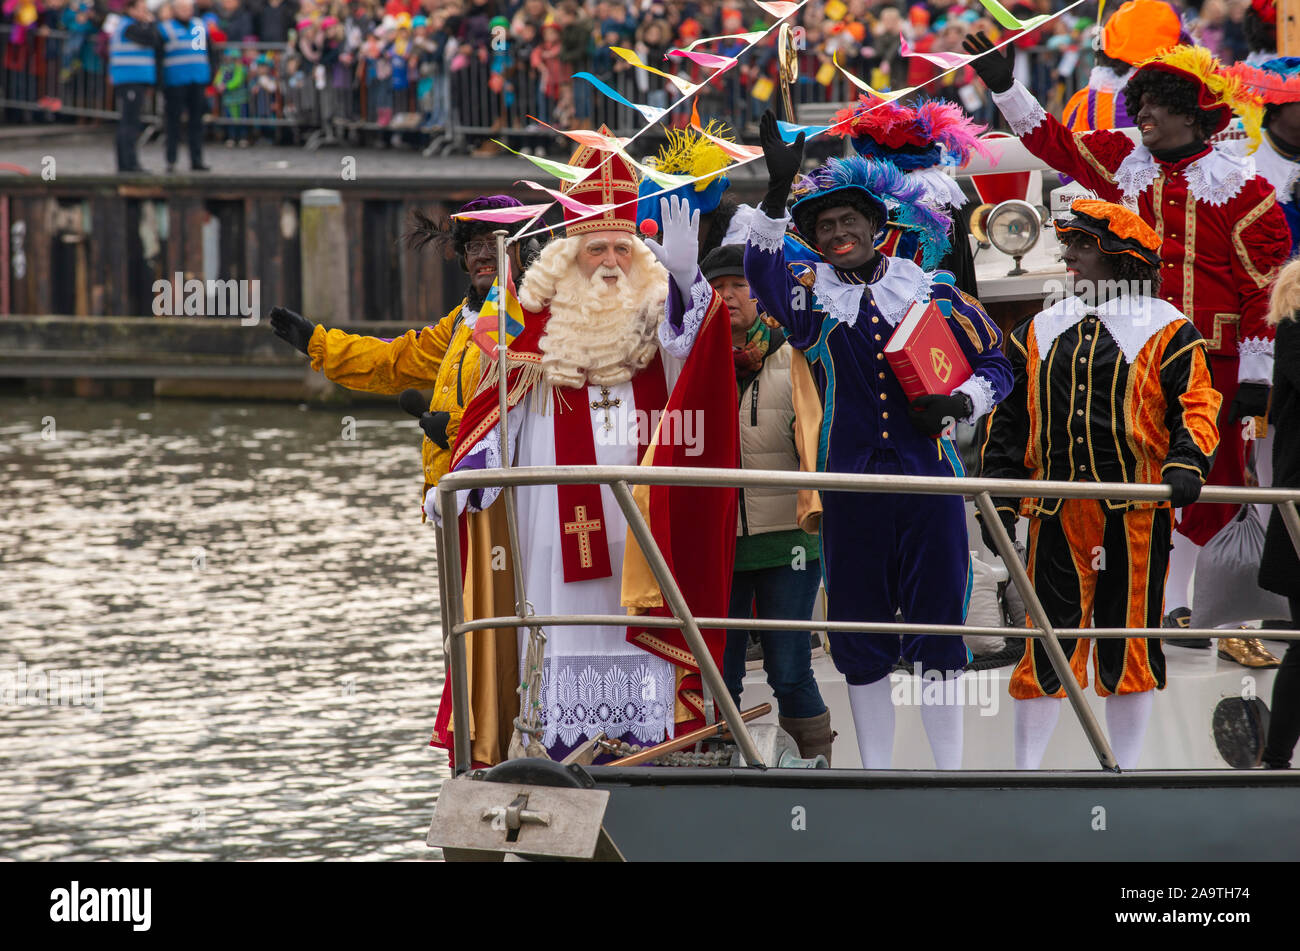 ENSCHEDE, Niederlande - 16.November 2019: Die niederländischen Santa Claus genannt interklaas' ist Begrüßung der Kinder, während er auf einem Boot in einem dutc Stockfoto